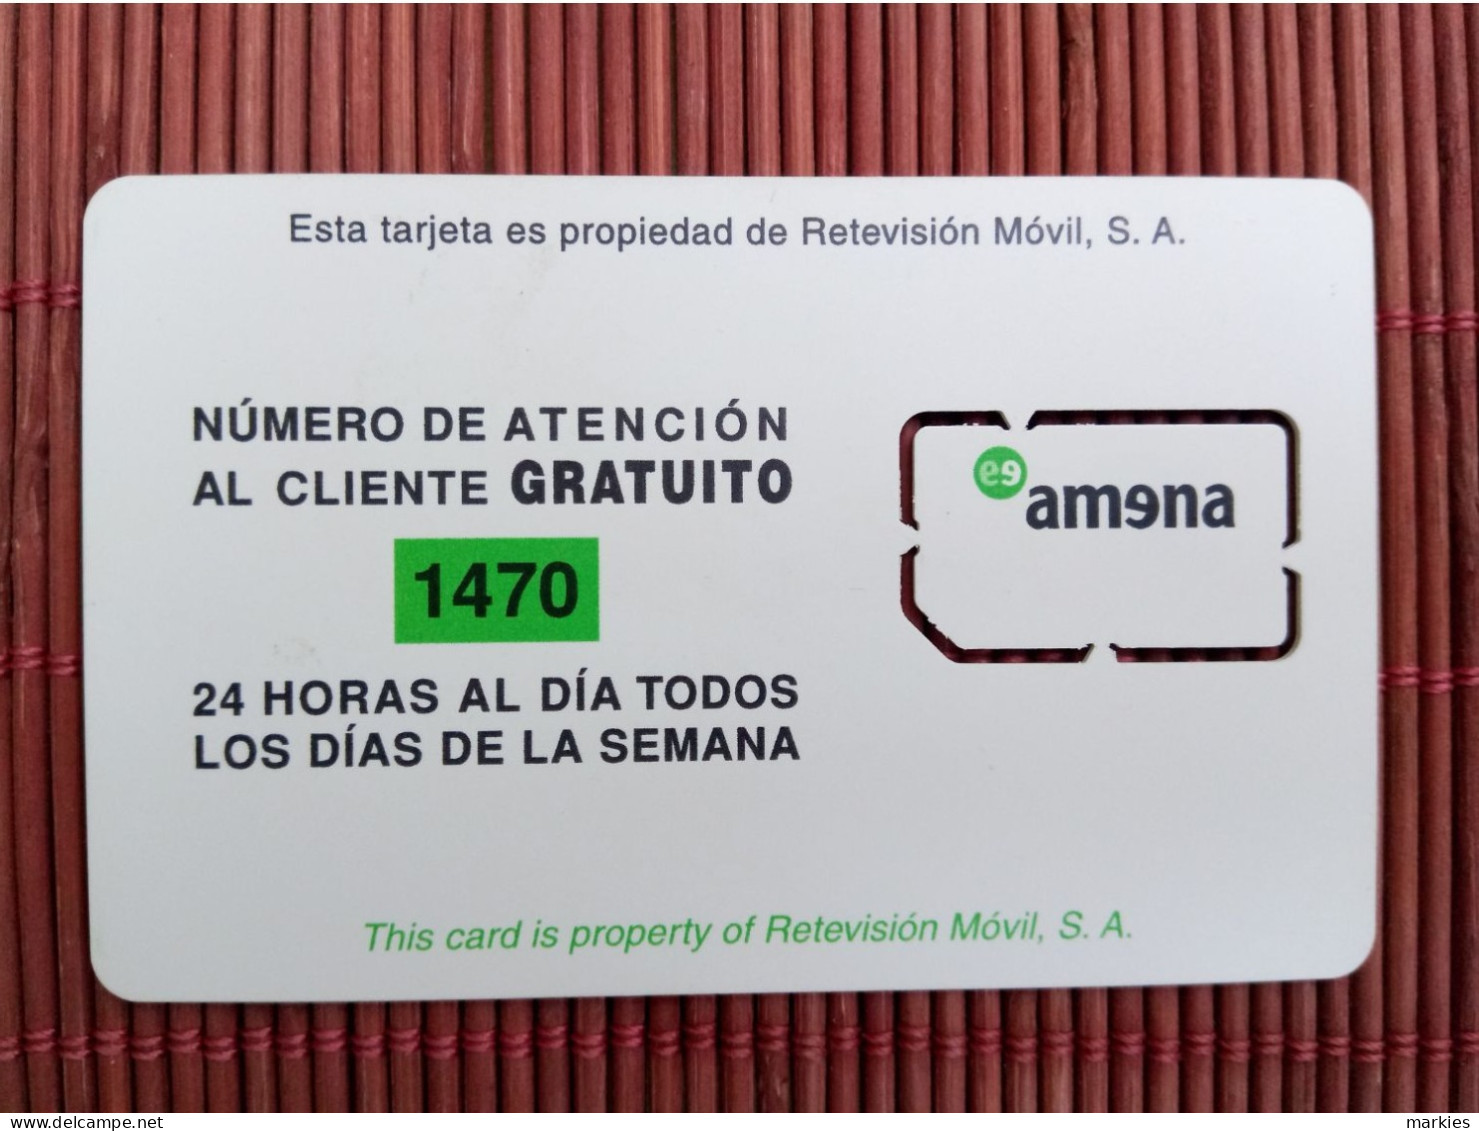 GSM Card Amena  Spain Mint   2 Photos Rare - Amena - Retevision